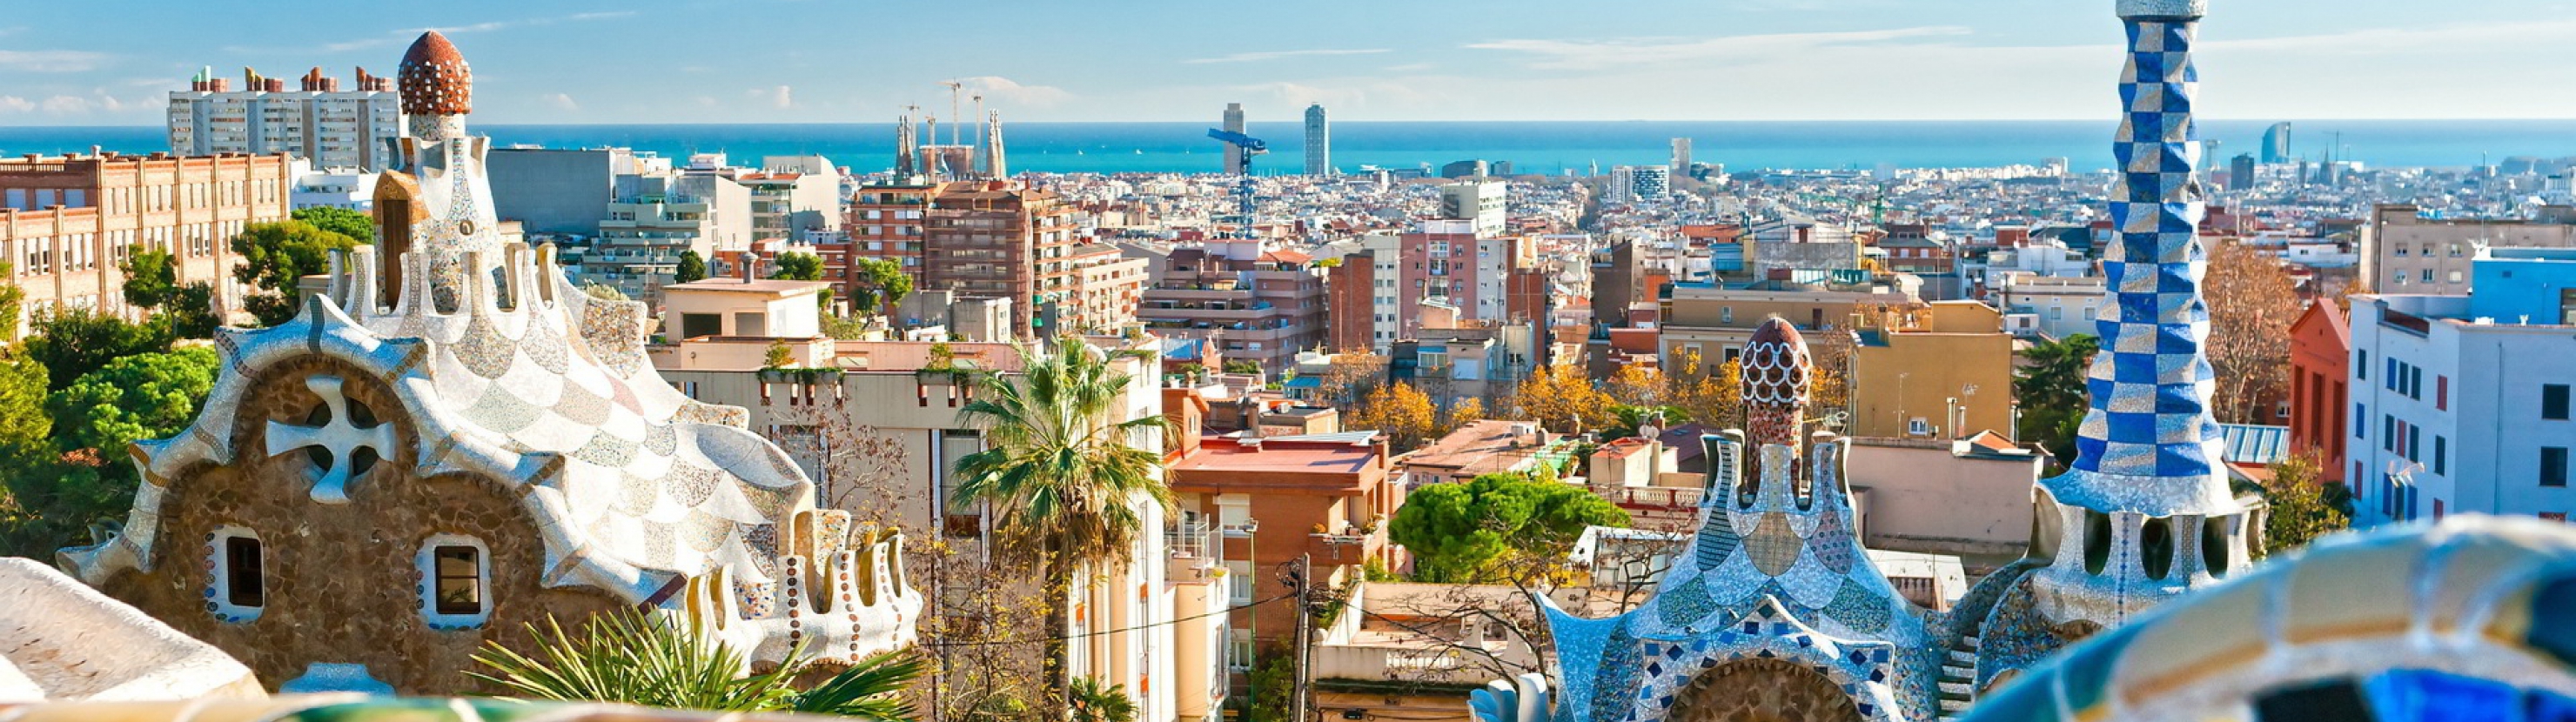 Hispaania - Costa Brava ja Kataloonia parimad palad